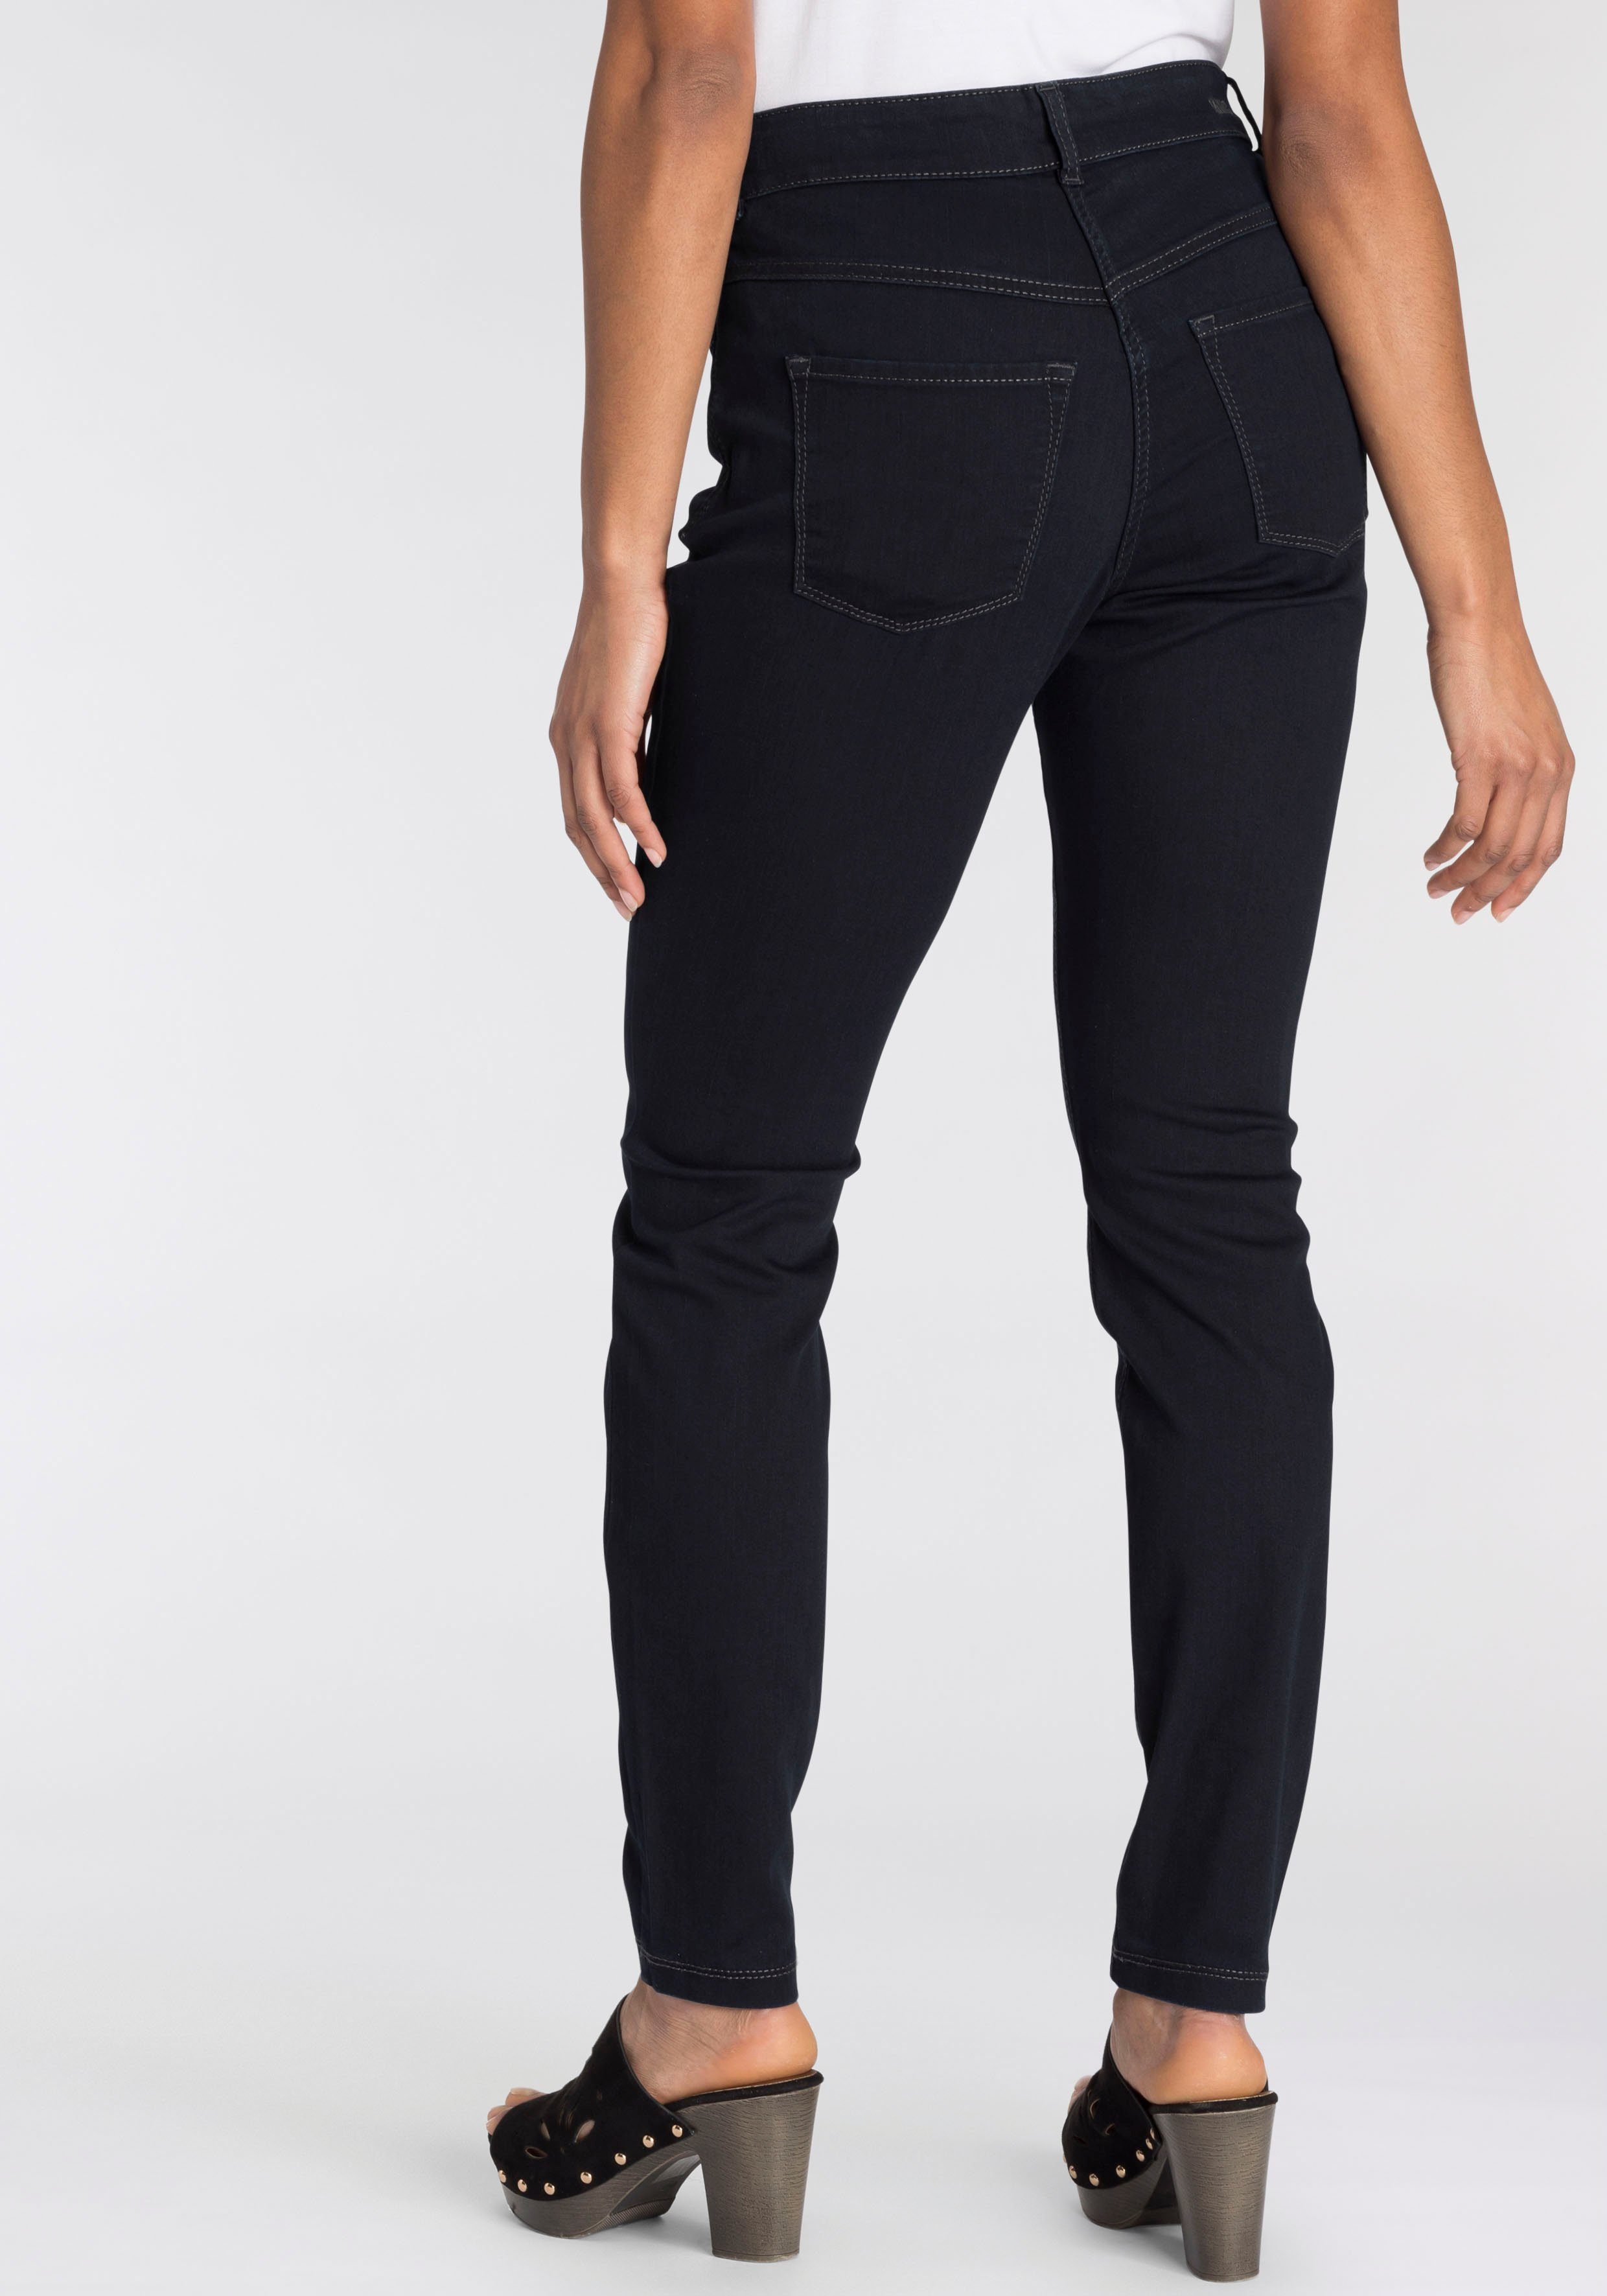 Dies ist eine Liste von den MAC bequem Qualität Power-Stretch Hiperstretch-Skinny Tag blue ganzen Skinny-fit-Jeans rinsed dark sitzt